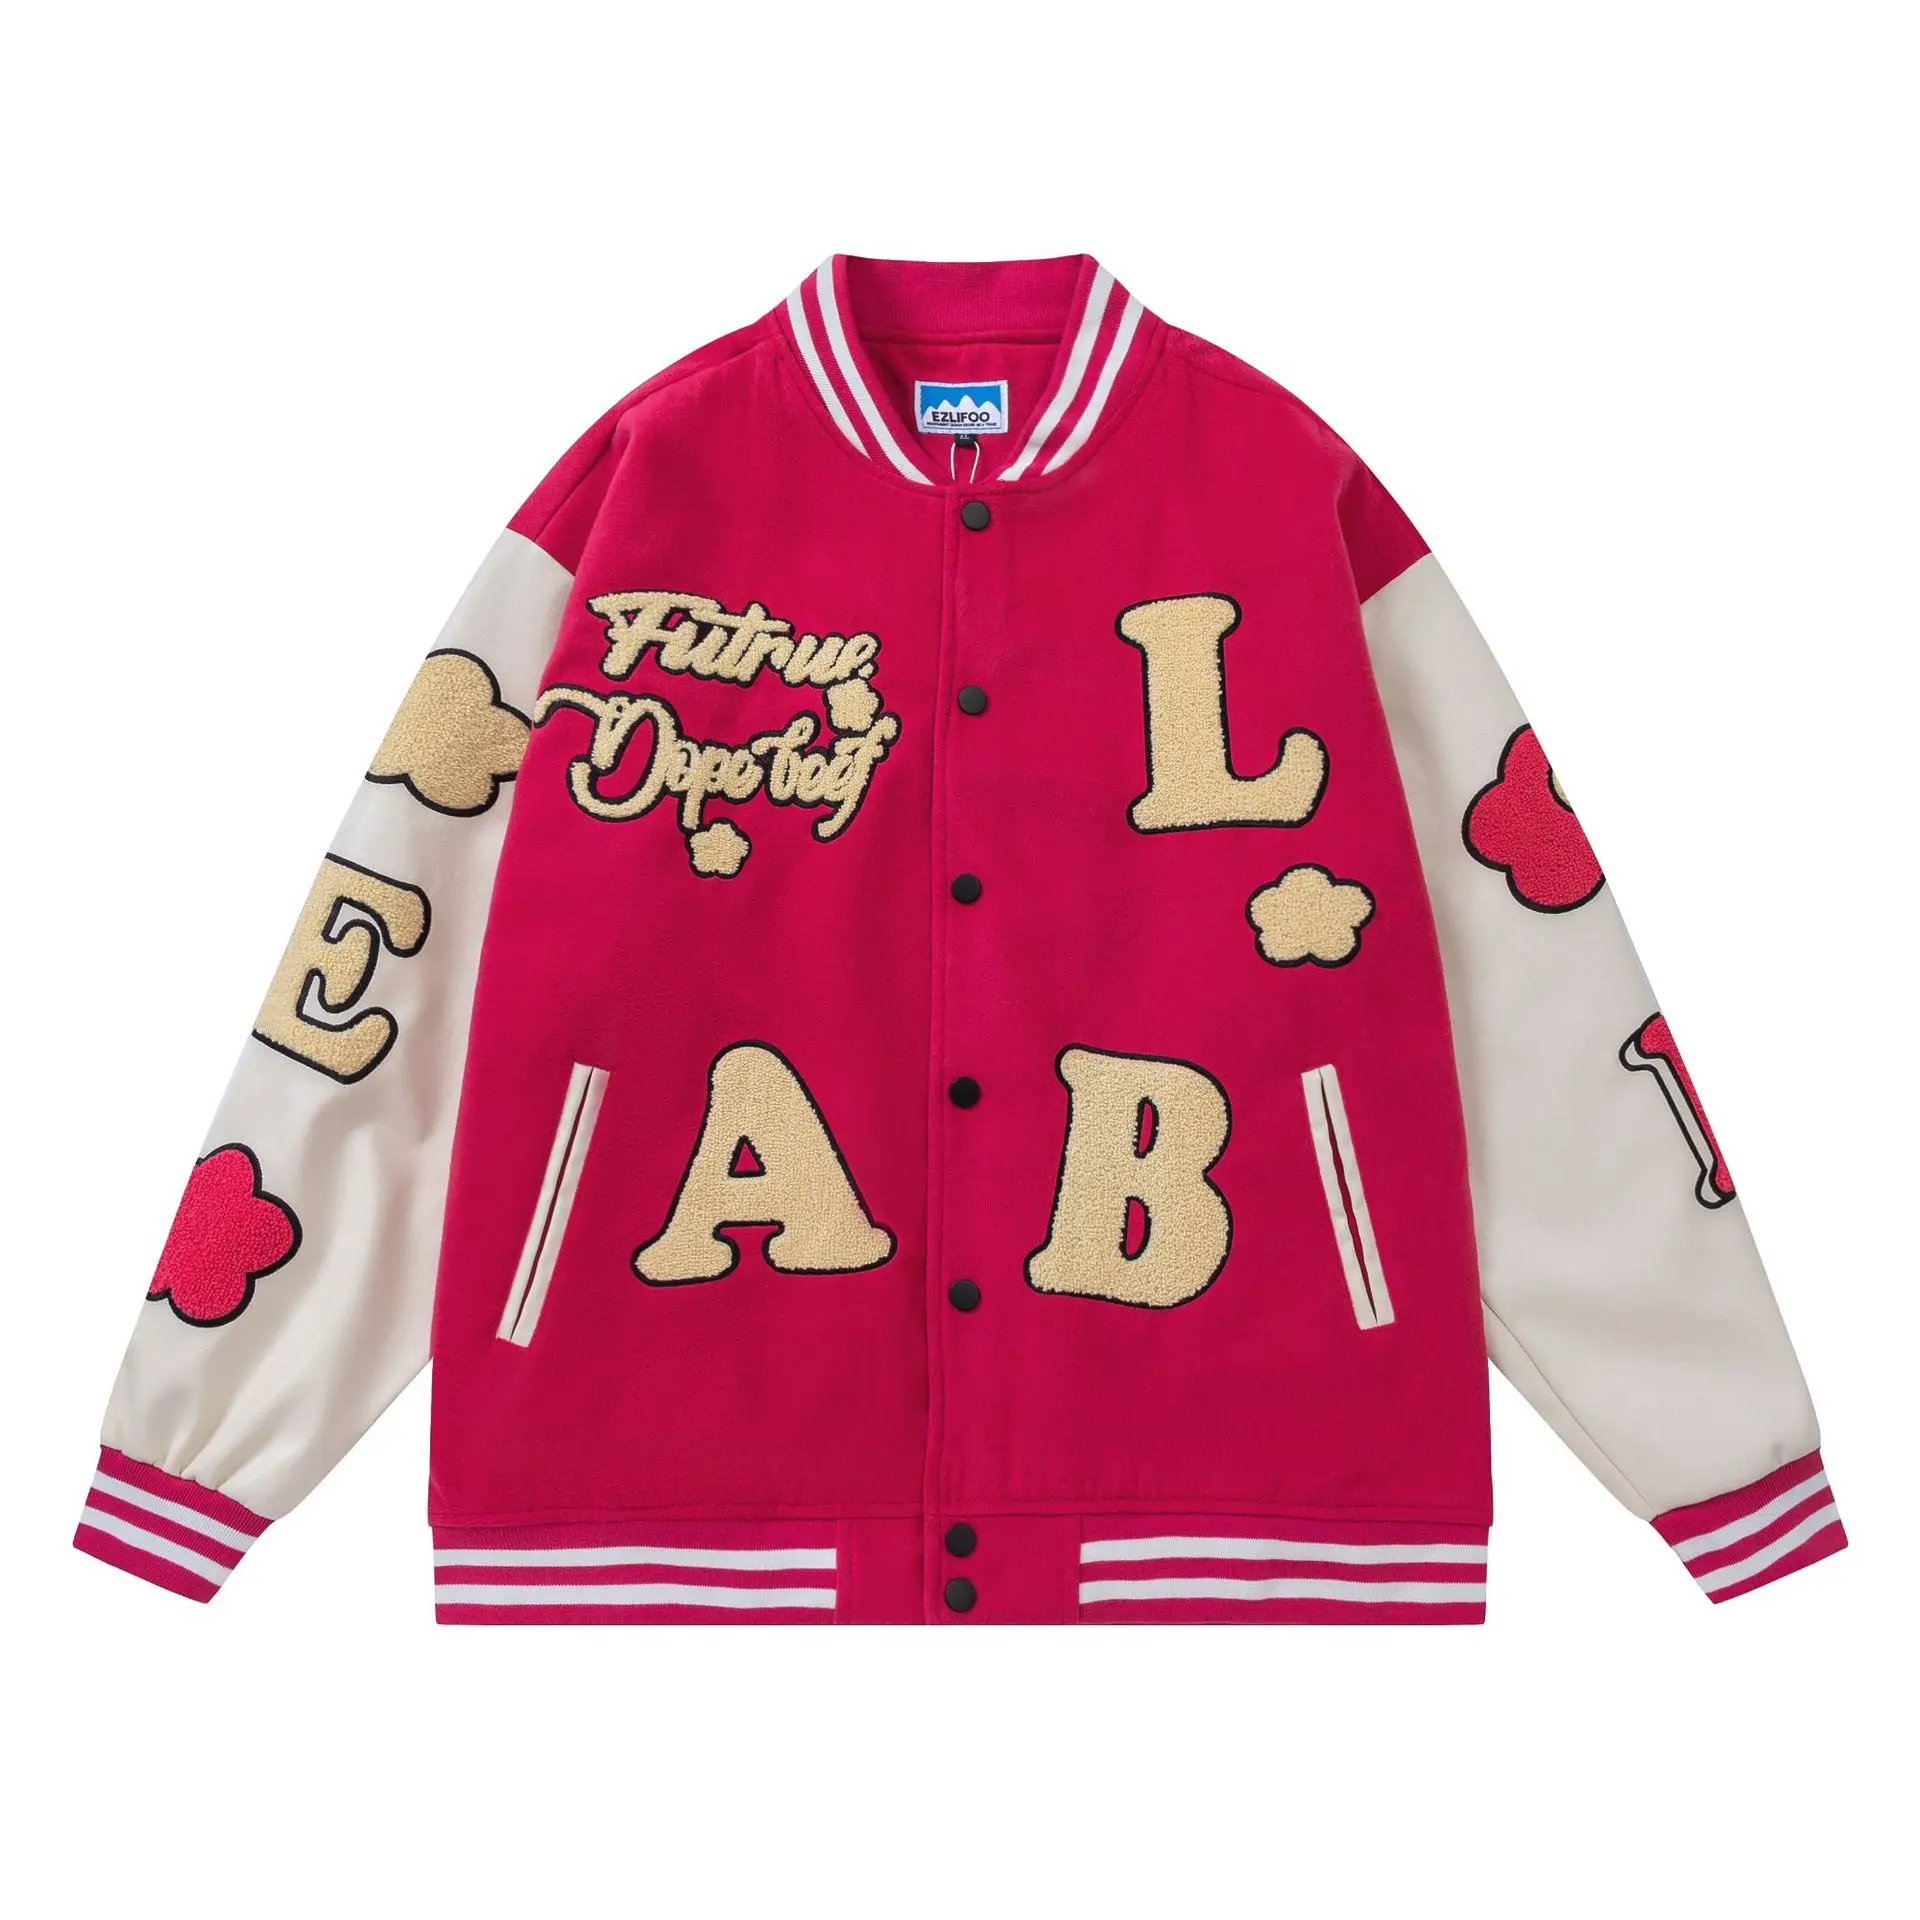 Embroidery Tiger Bomber Jacket Men Jacket Streetwear Hip Hop Baseball Jacket  Us Size M-xxl - Jackets - AliExpress